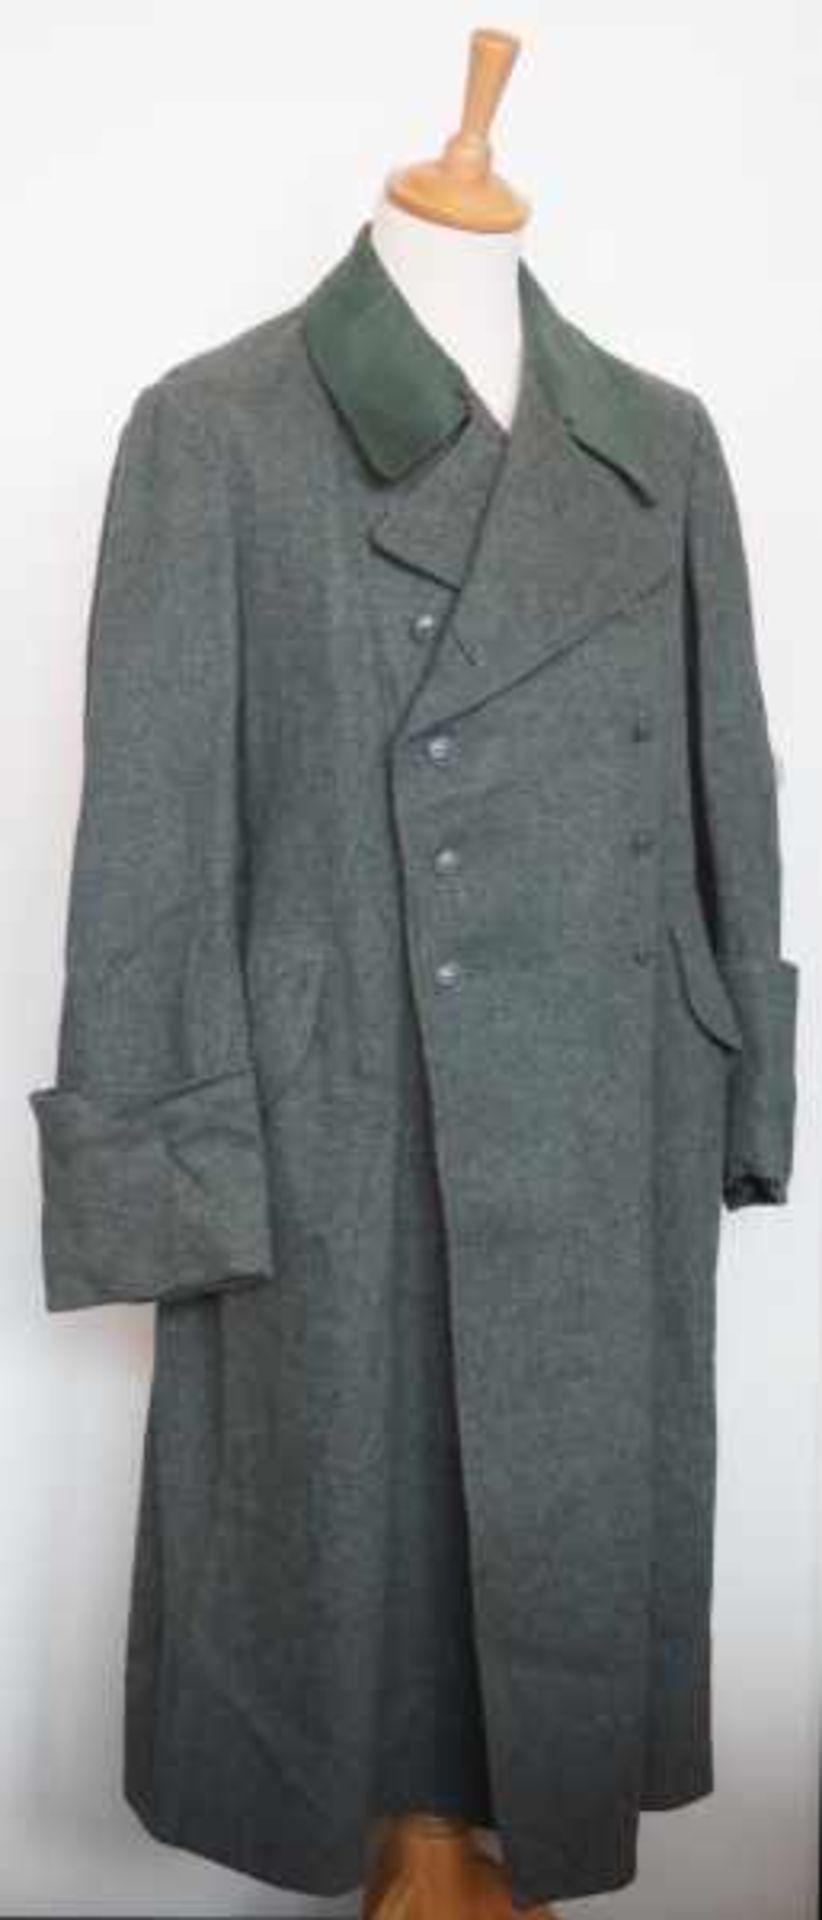 0.1.) Sammlung Stahlhelmbund Stahlhelmbund: Mantel.Felgraues Tuch, dunkelgrüner Kragen, mit grau